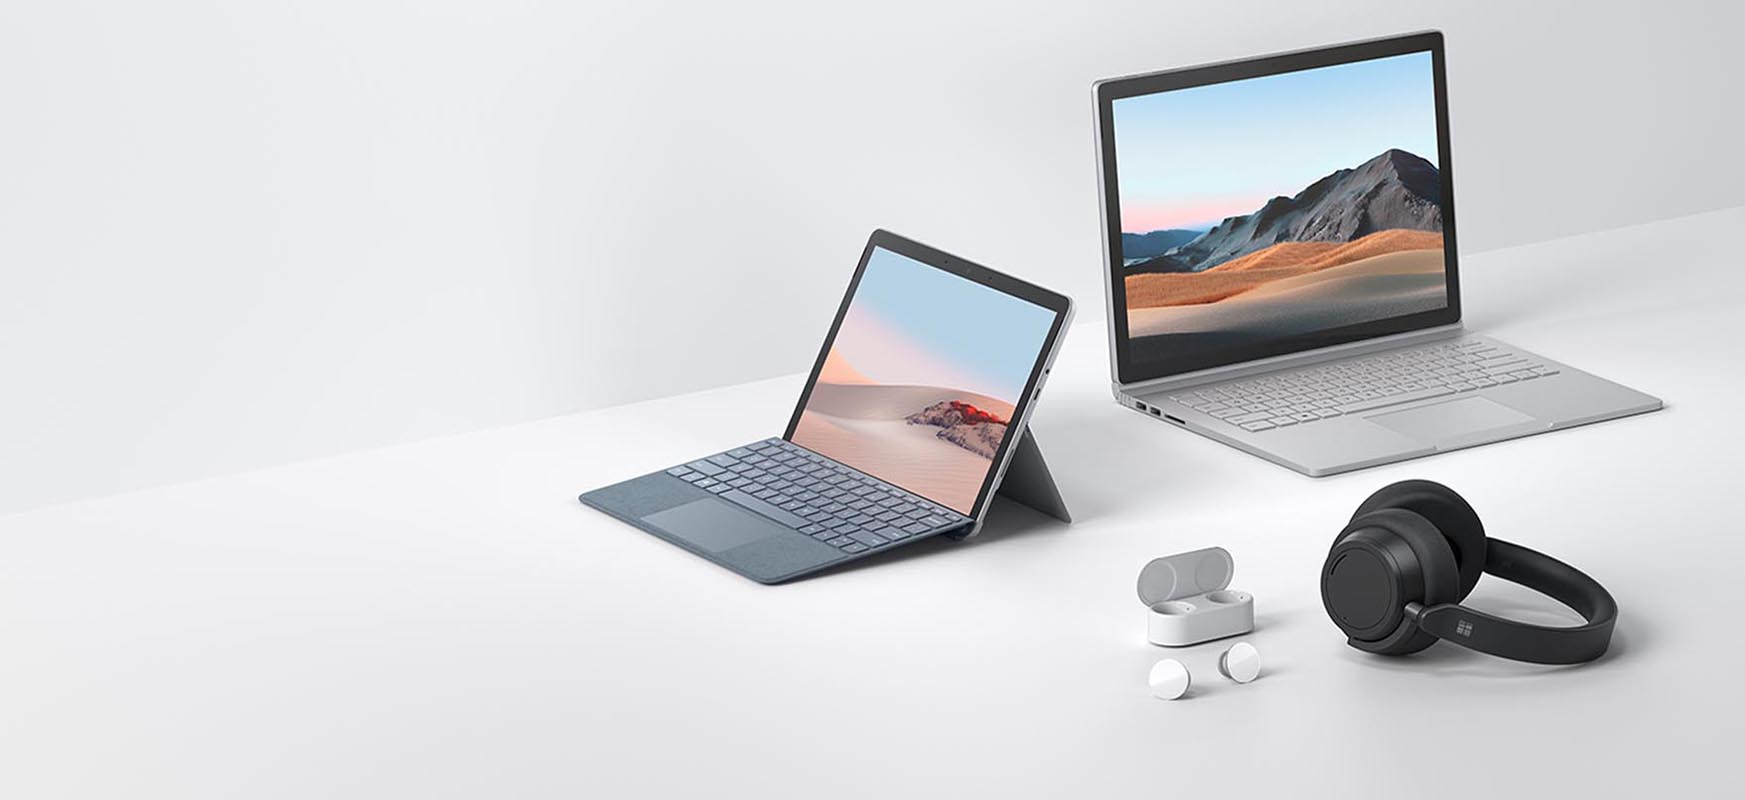 Microsoft albisteen ustekabeko uholdeak: Surface Go berria, Surface Book eta aurikularrak
